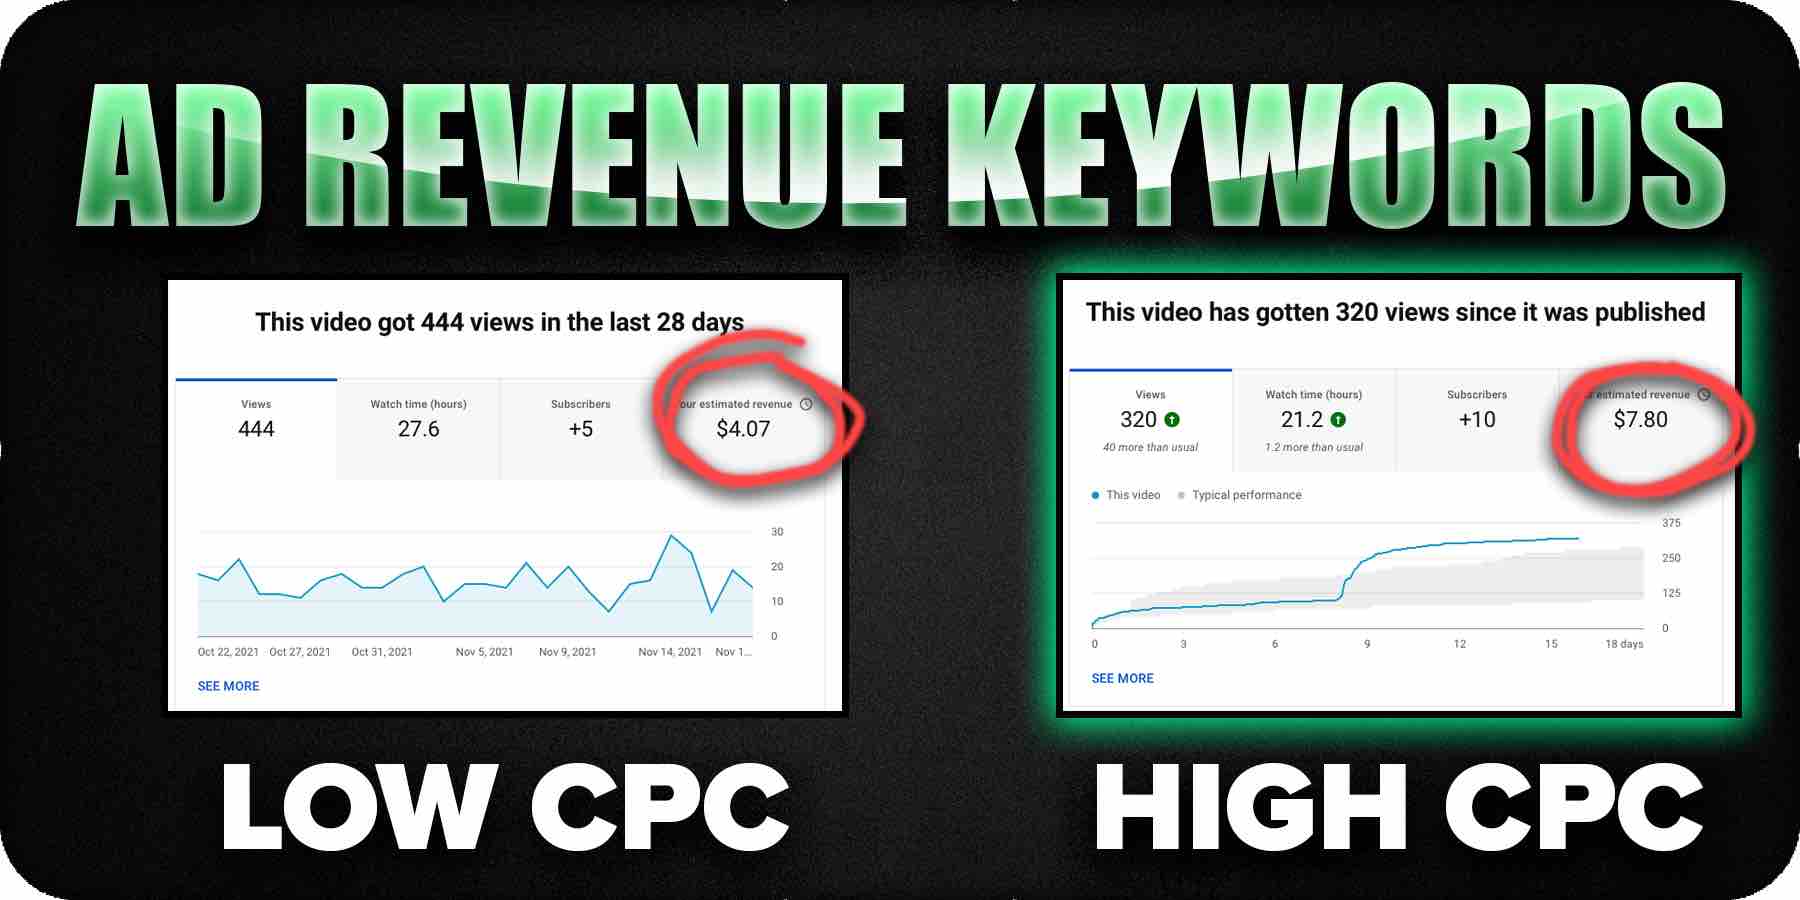 Ad revenue based on Keywords